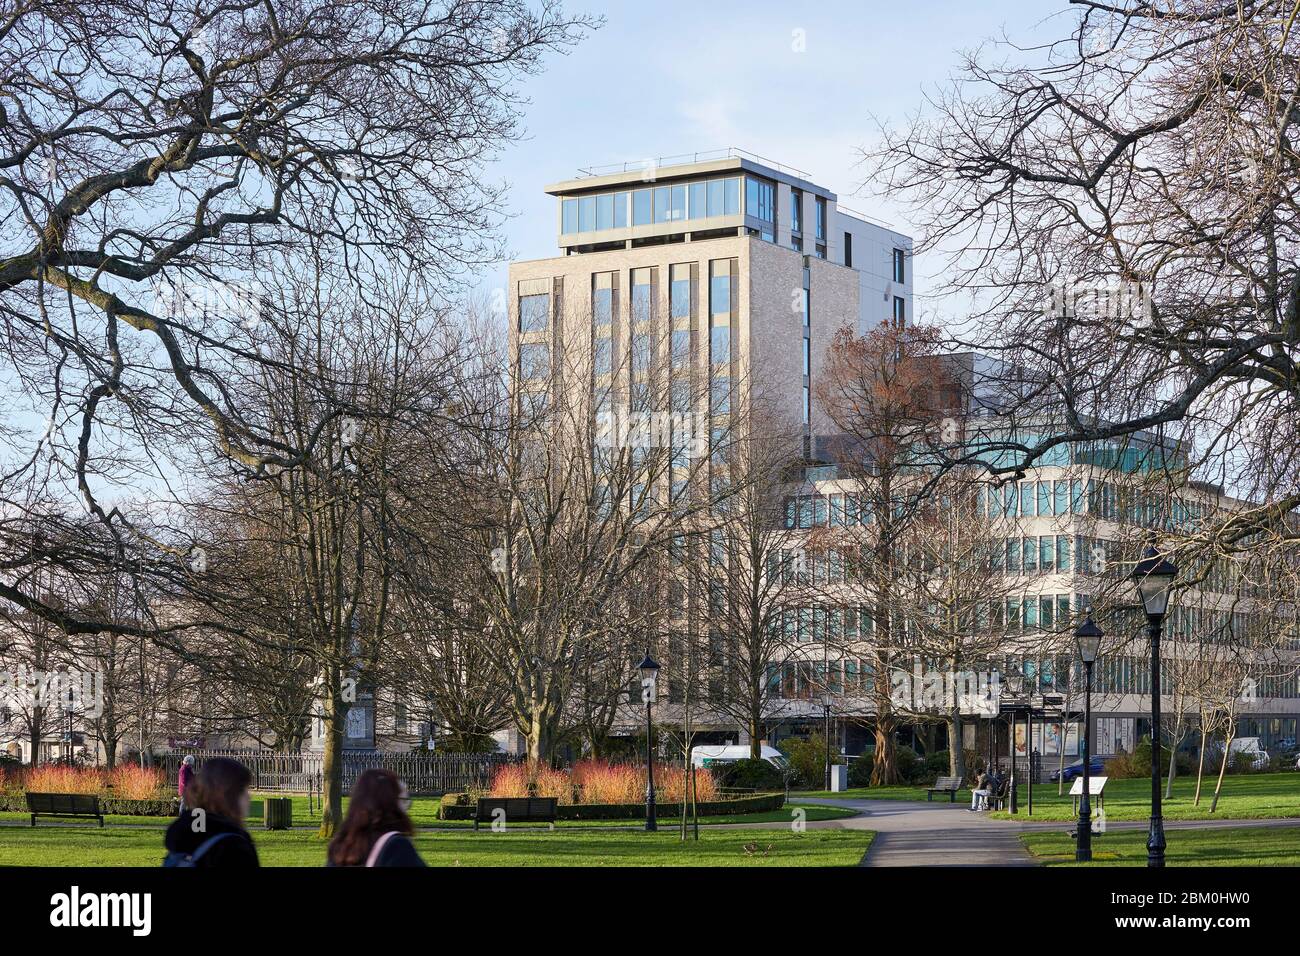 Vue extérieure depuis le parc Watts. Cumberland place, Southampton, Royaume-Uni. Architecte: O'Connell East Architects, 2019. Banque D'Images